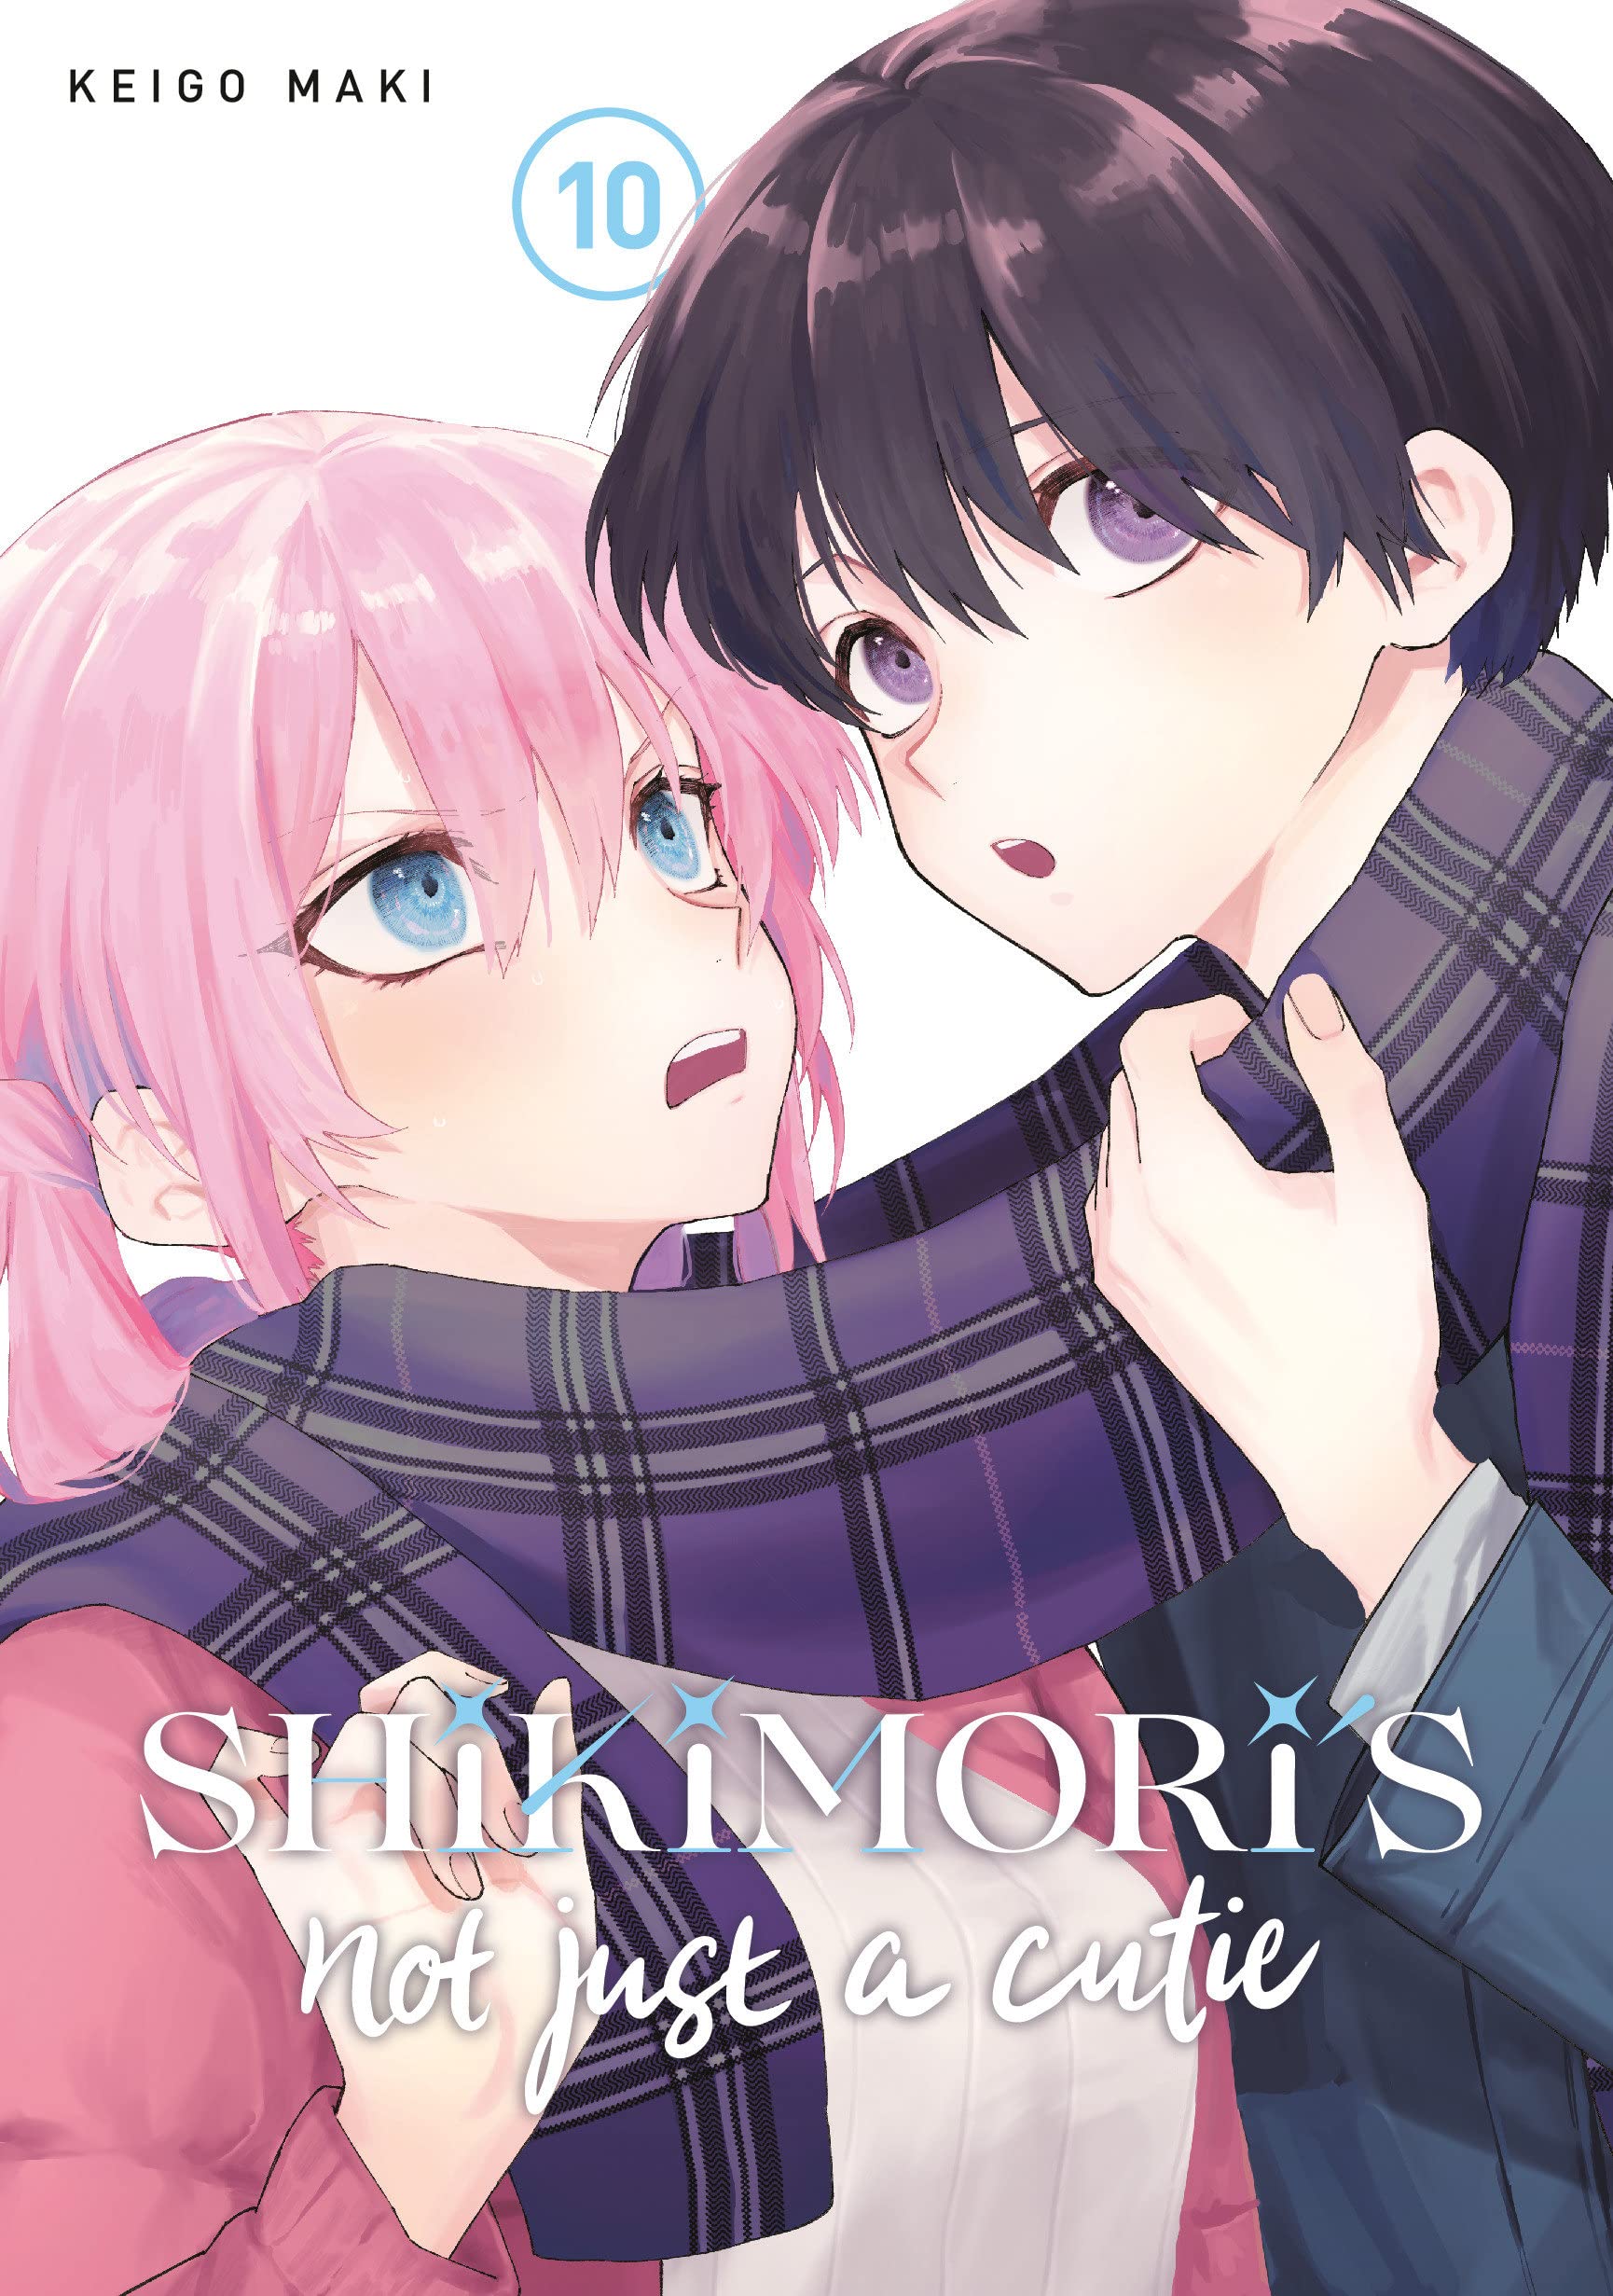 Shikimori's Not Just a Cutie Vol. 10